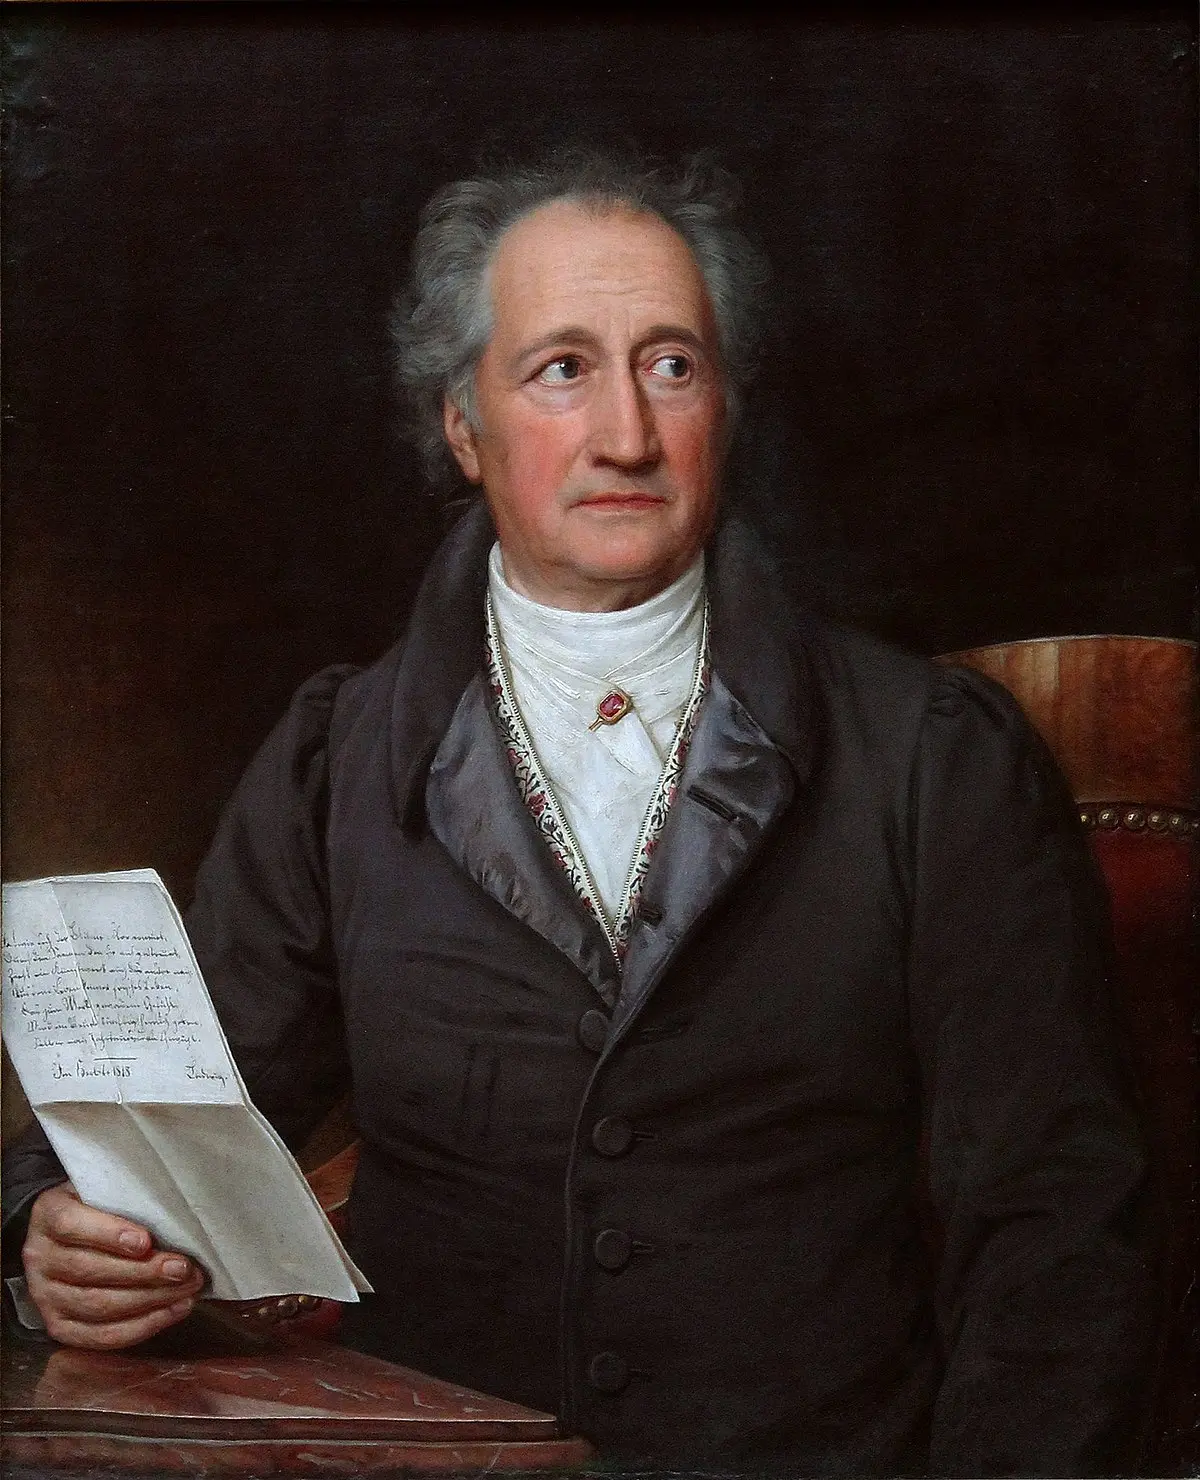 biografia de johann wolfgang goethe resumen - Cuál es la obra más importante de Goethe